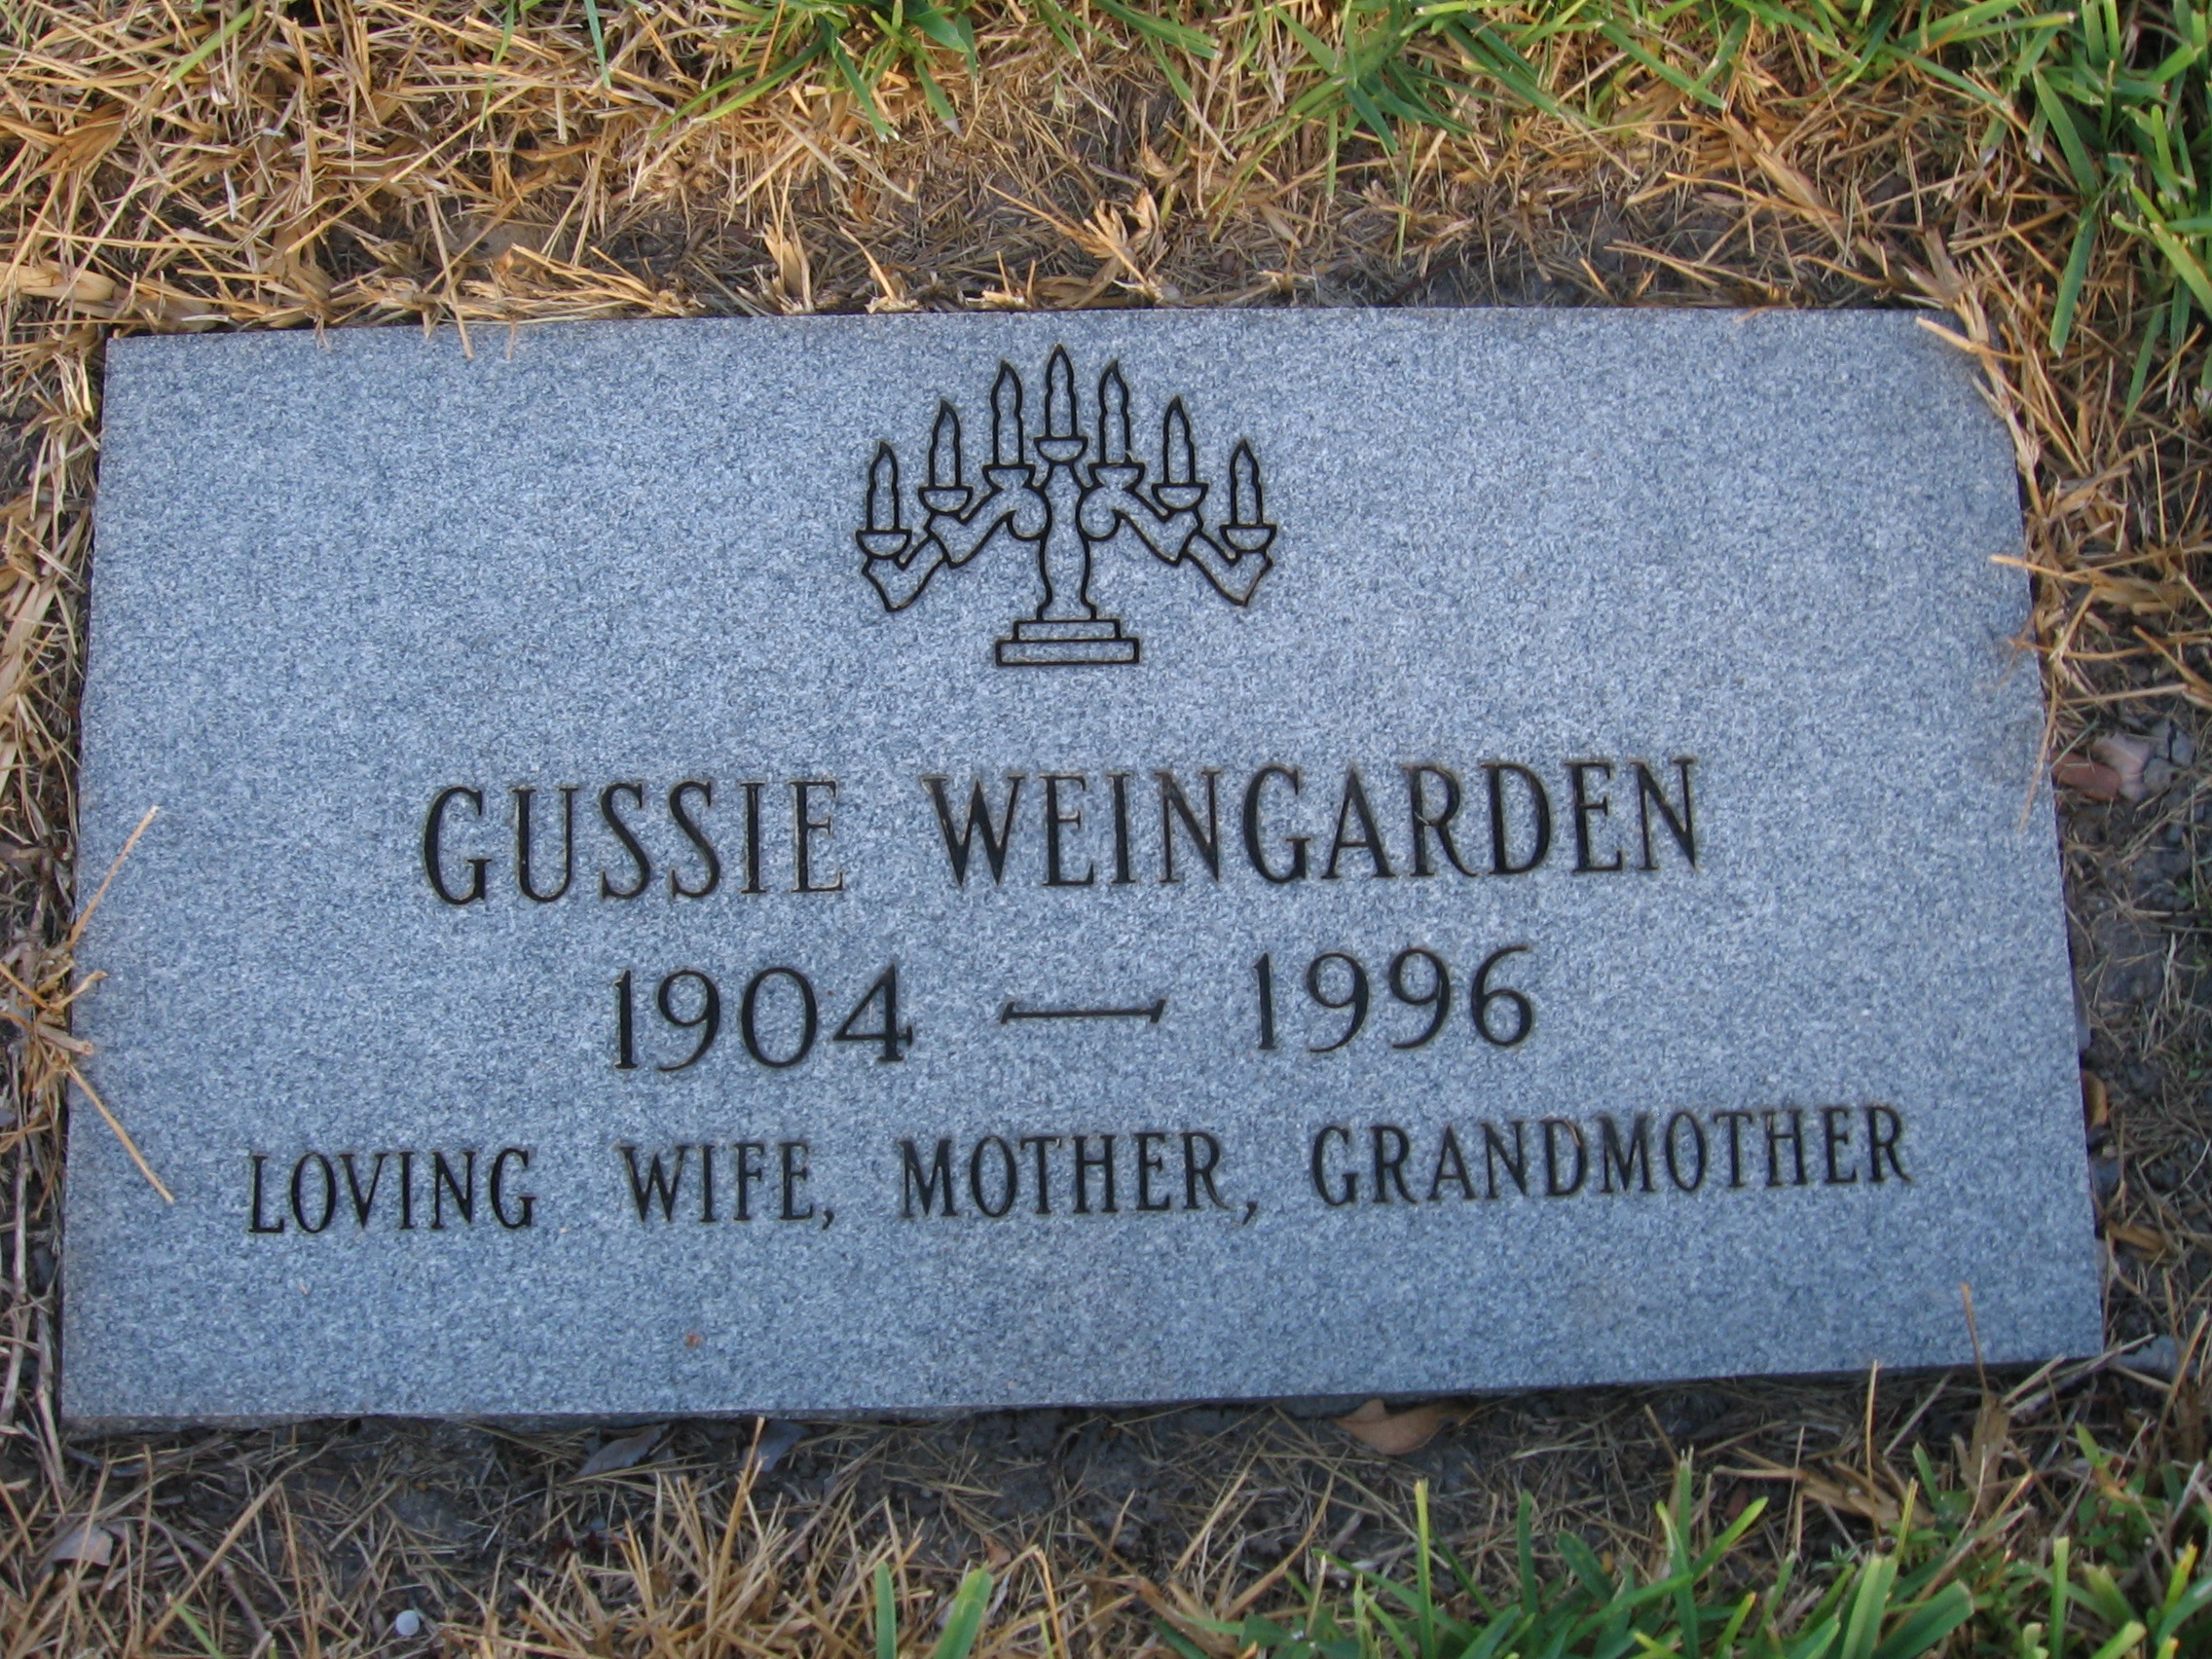 Gussie Weingarden